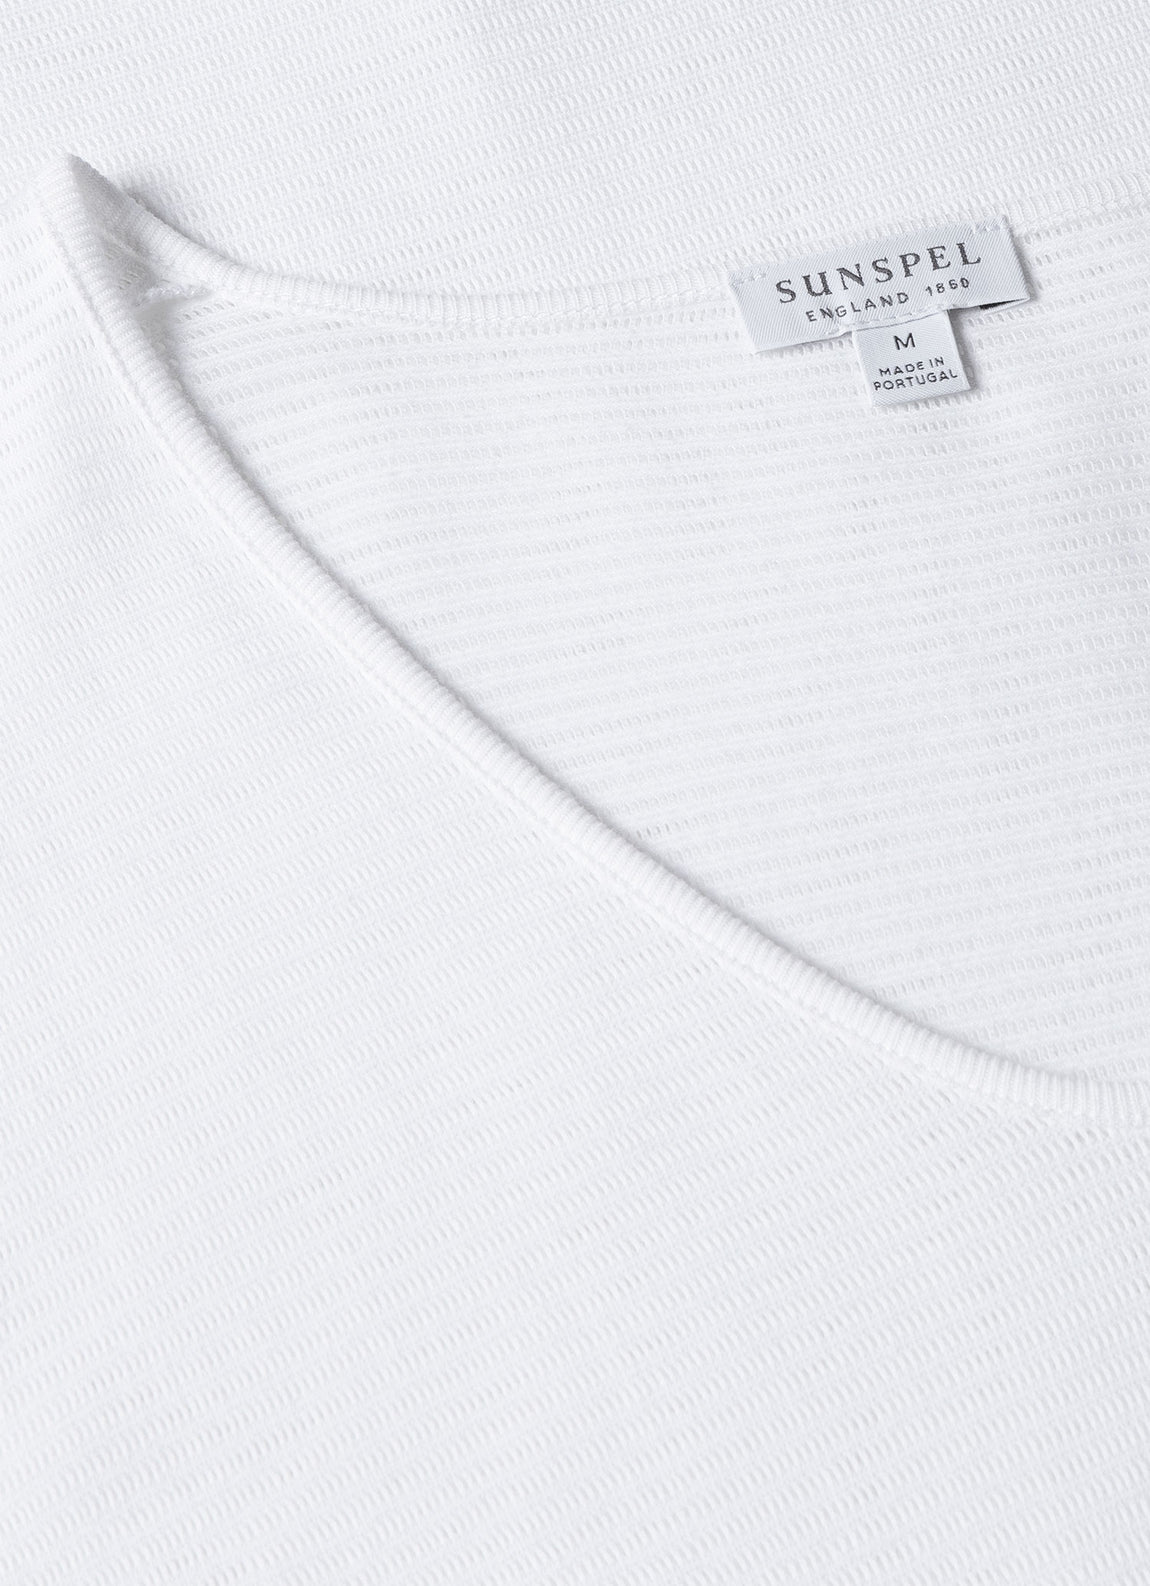 Men's Cellular Cotton V-Neck Underwear T-shirt in White